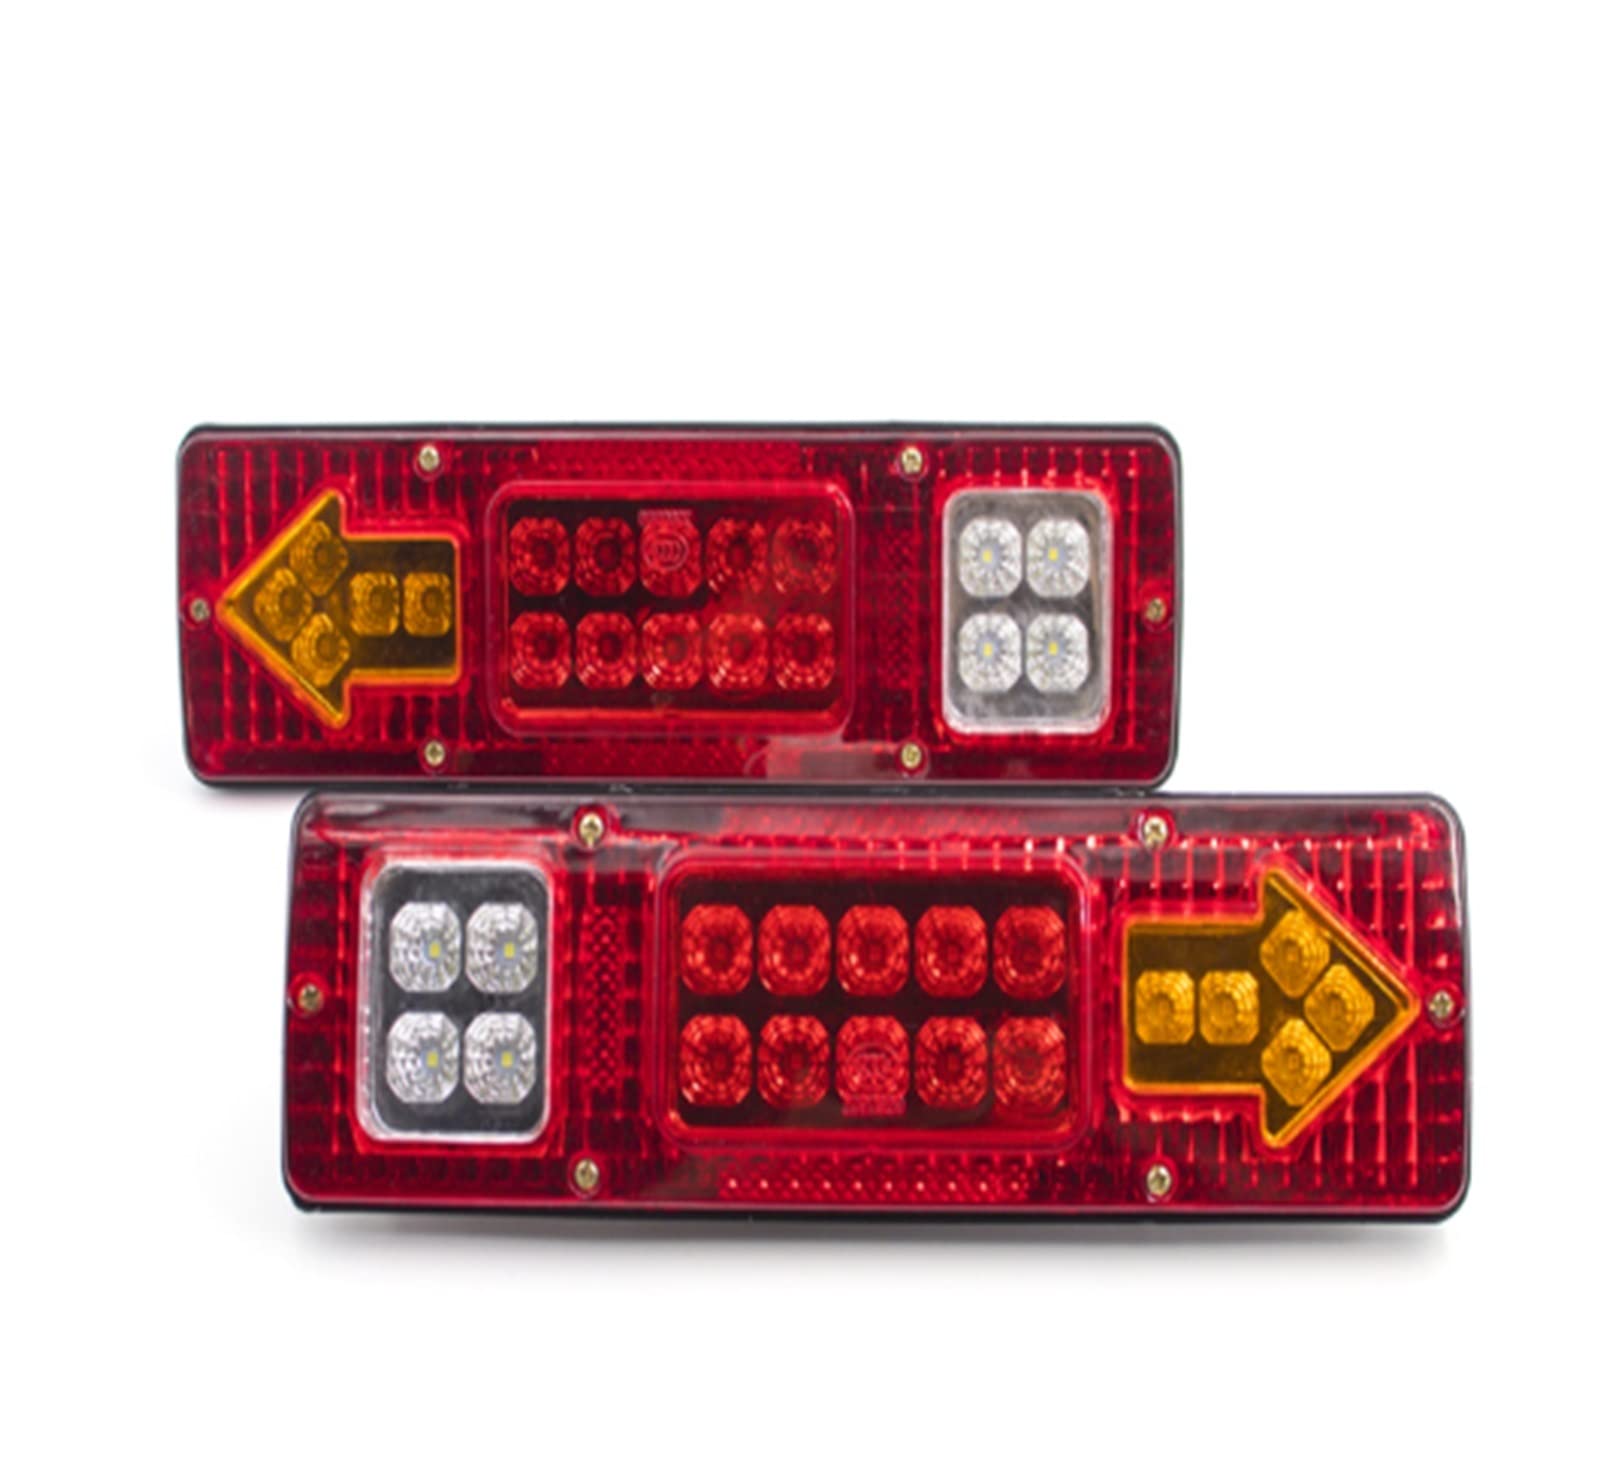 INLIMA Rücklicht Bremslicht Auto LKW Rücklicht Bremse Stop Blinker Signallampe Anhänger LKW Wohnwagen Wohnmobil 2 Stück 12V 24V (Farbe : Rot) von INLIMA